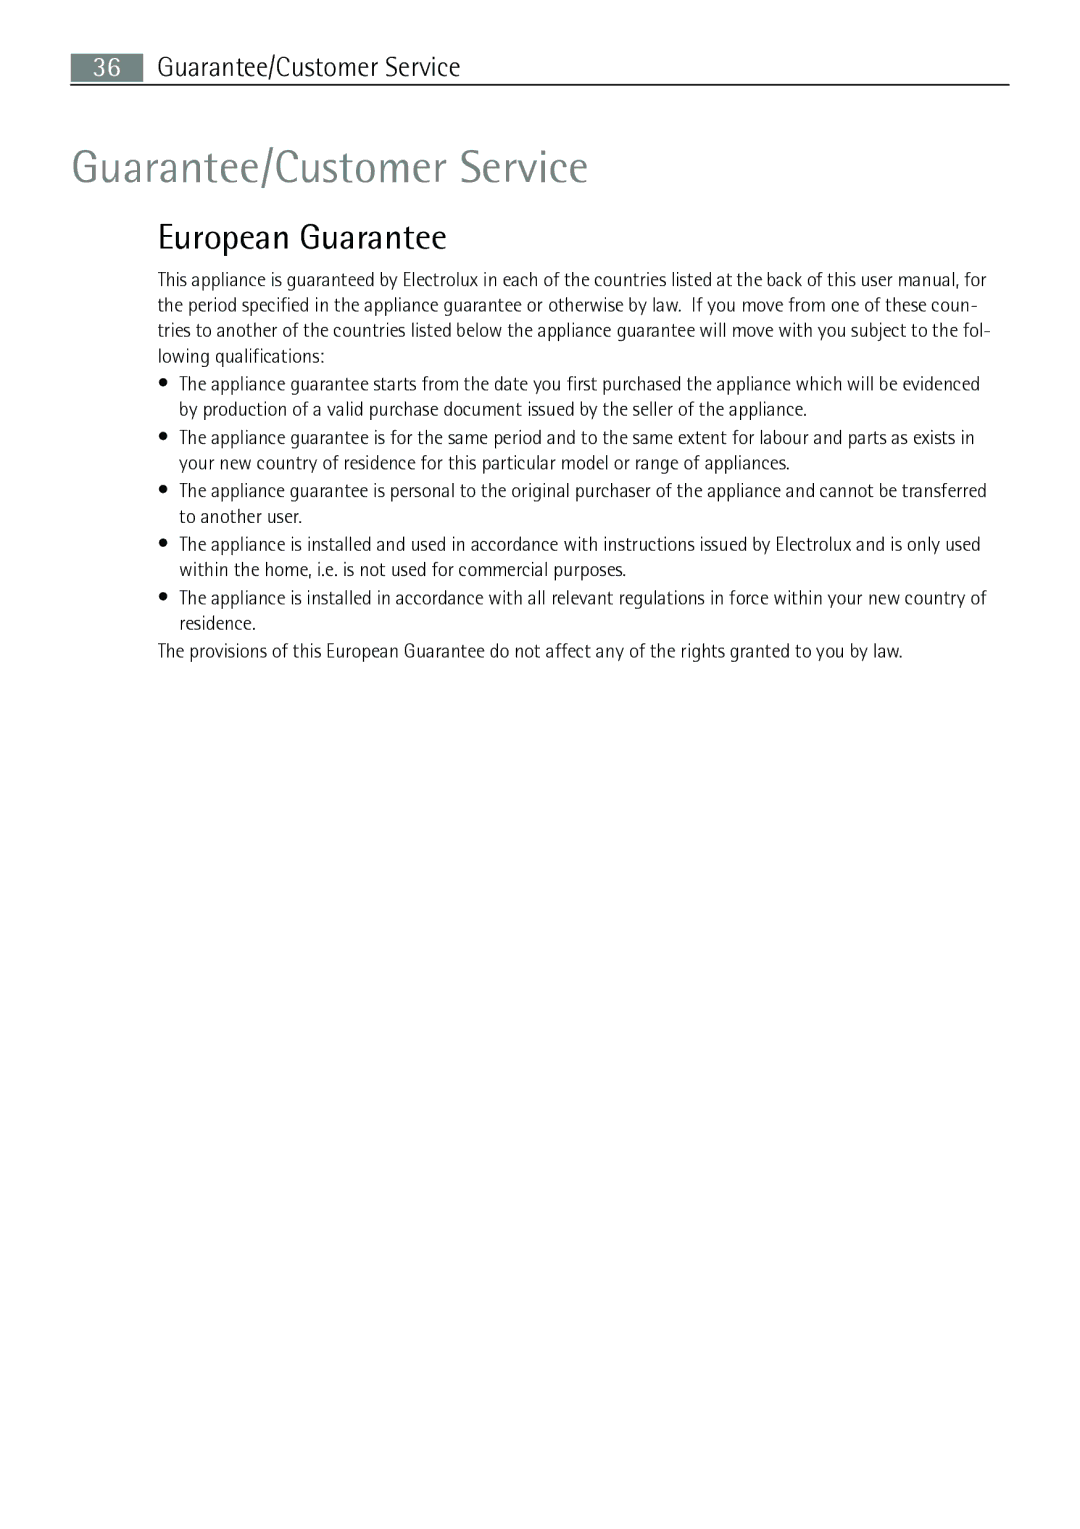 Electrolux 67160 KF-N user manual Guarantee/Customer Service, European Guarantee 